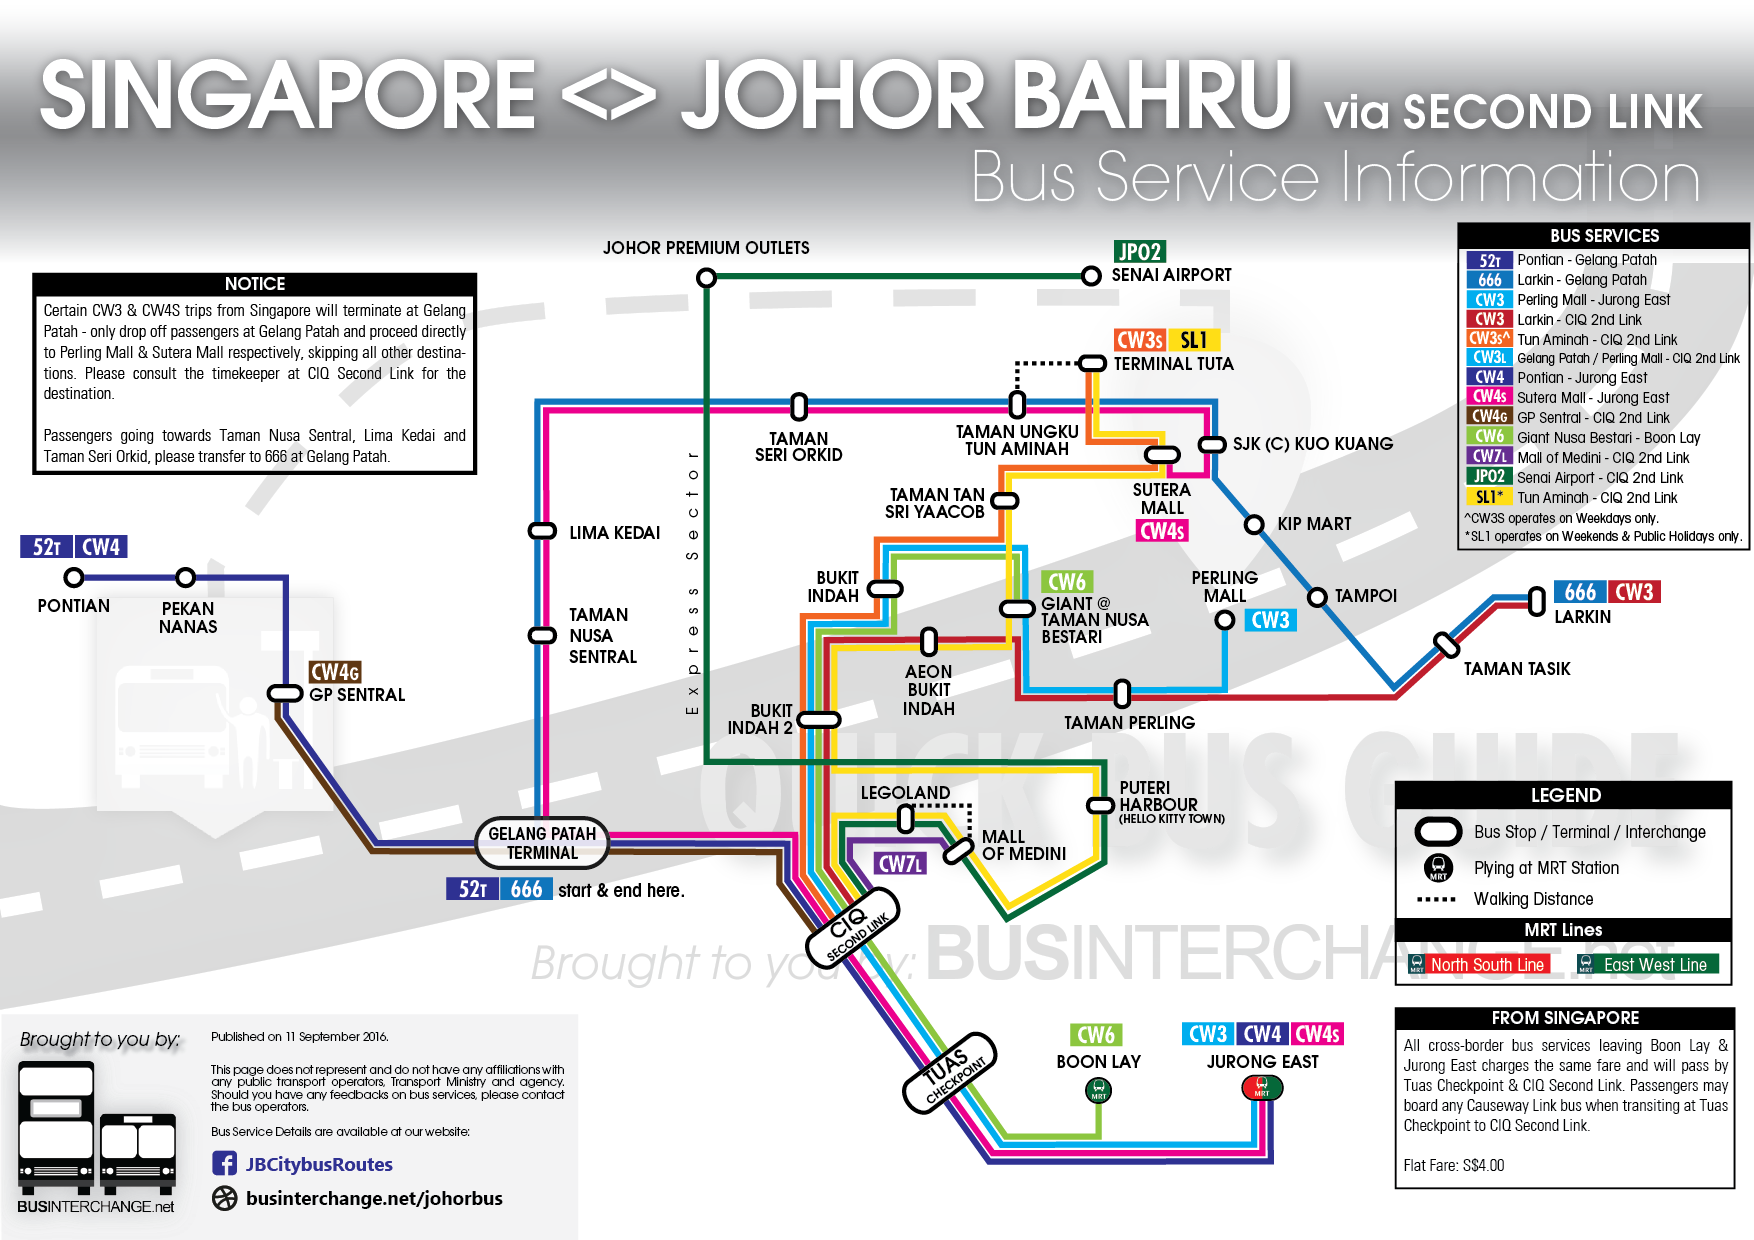 Easy Guide for Singapore - Johor Bahru Buses via Second Link